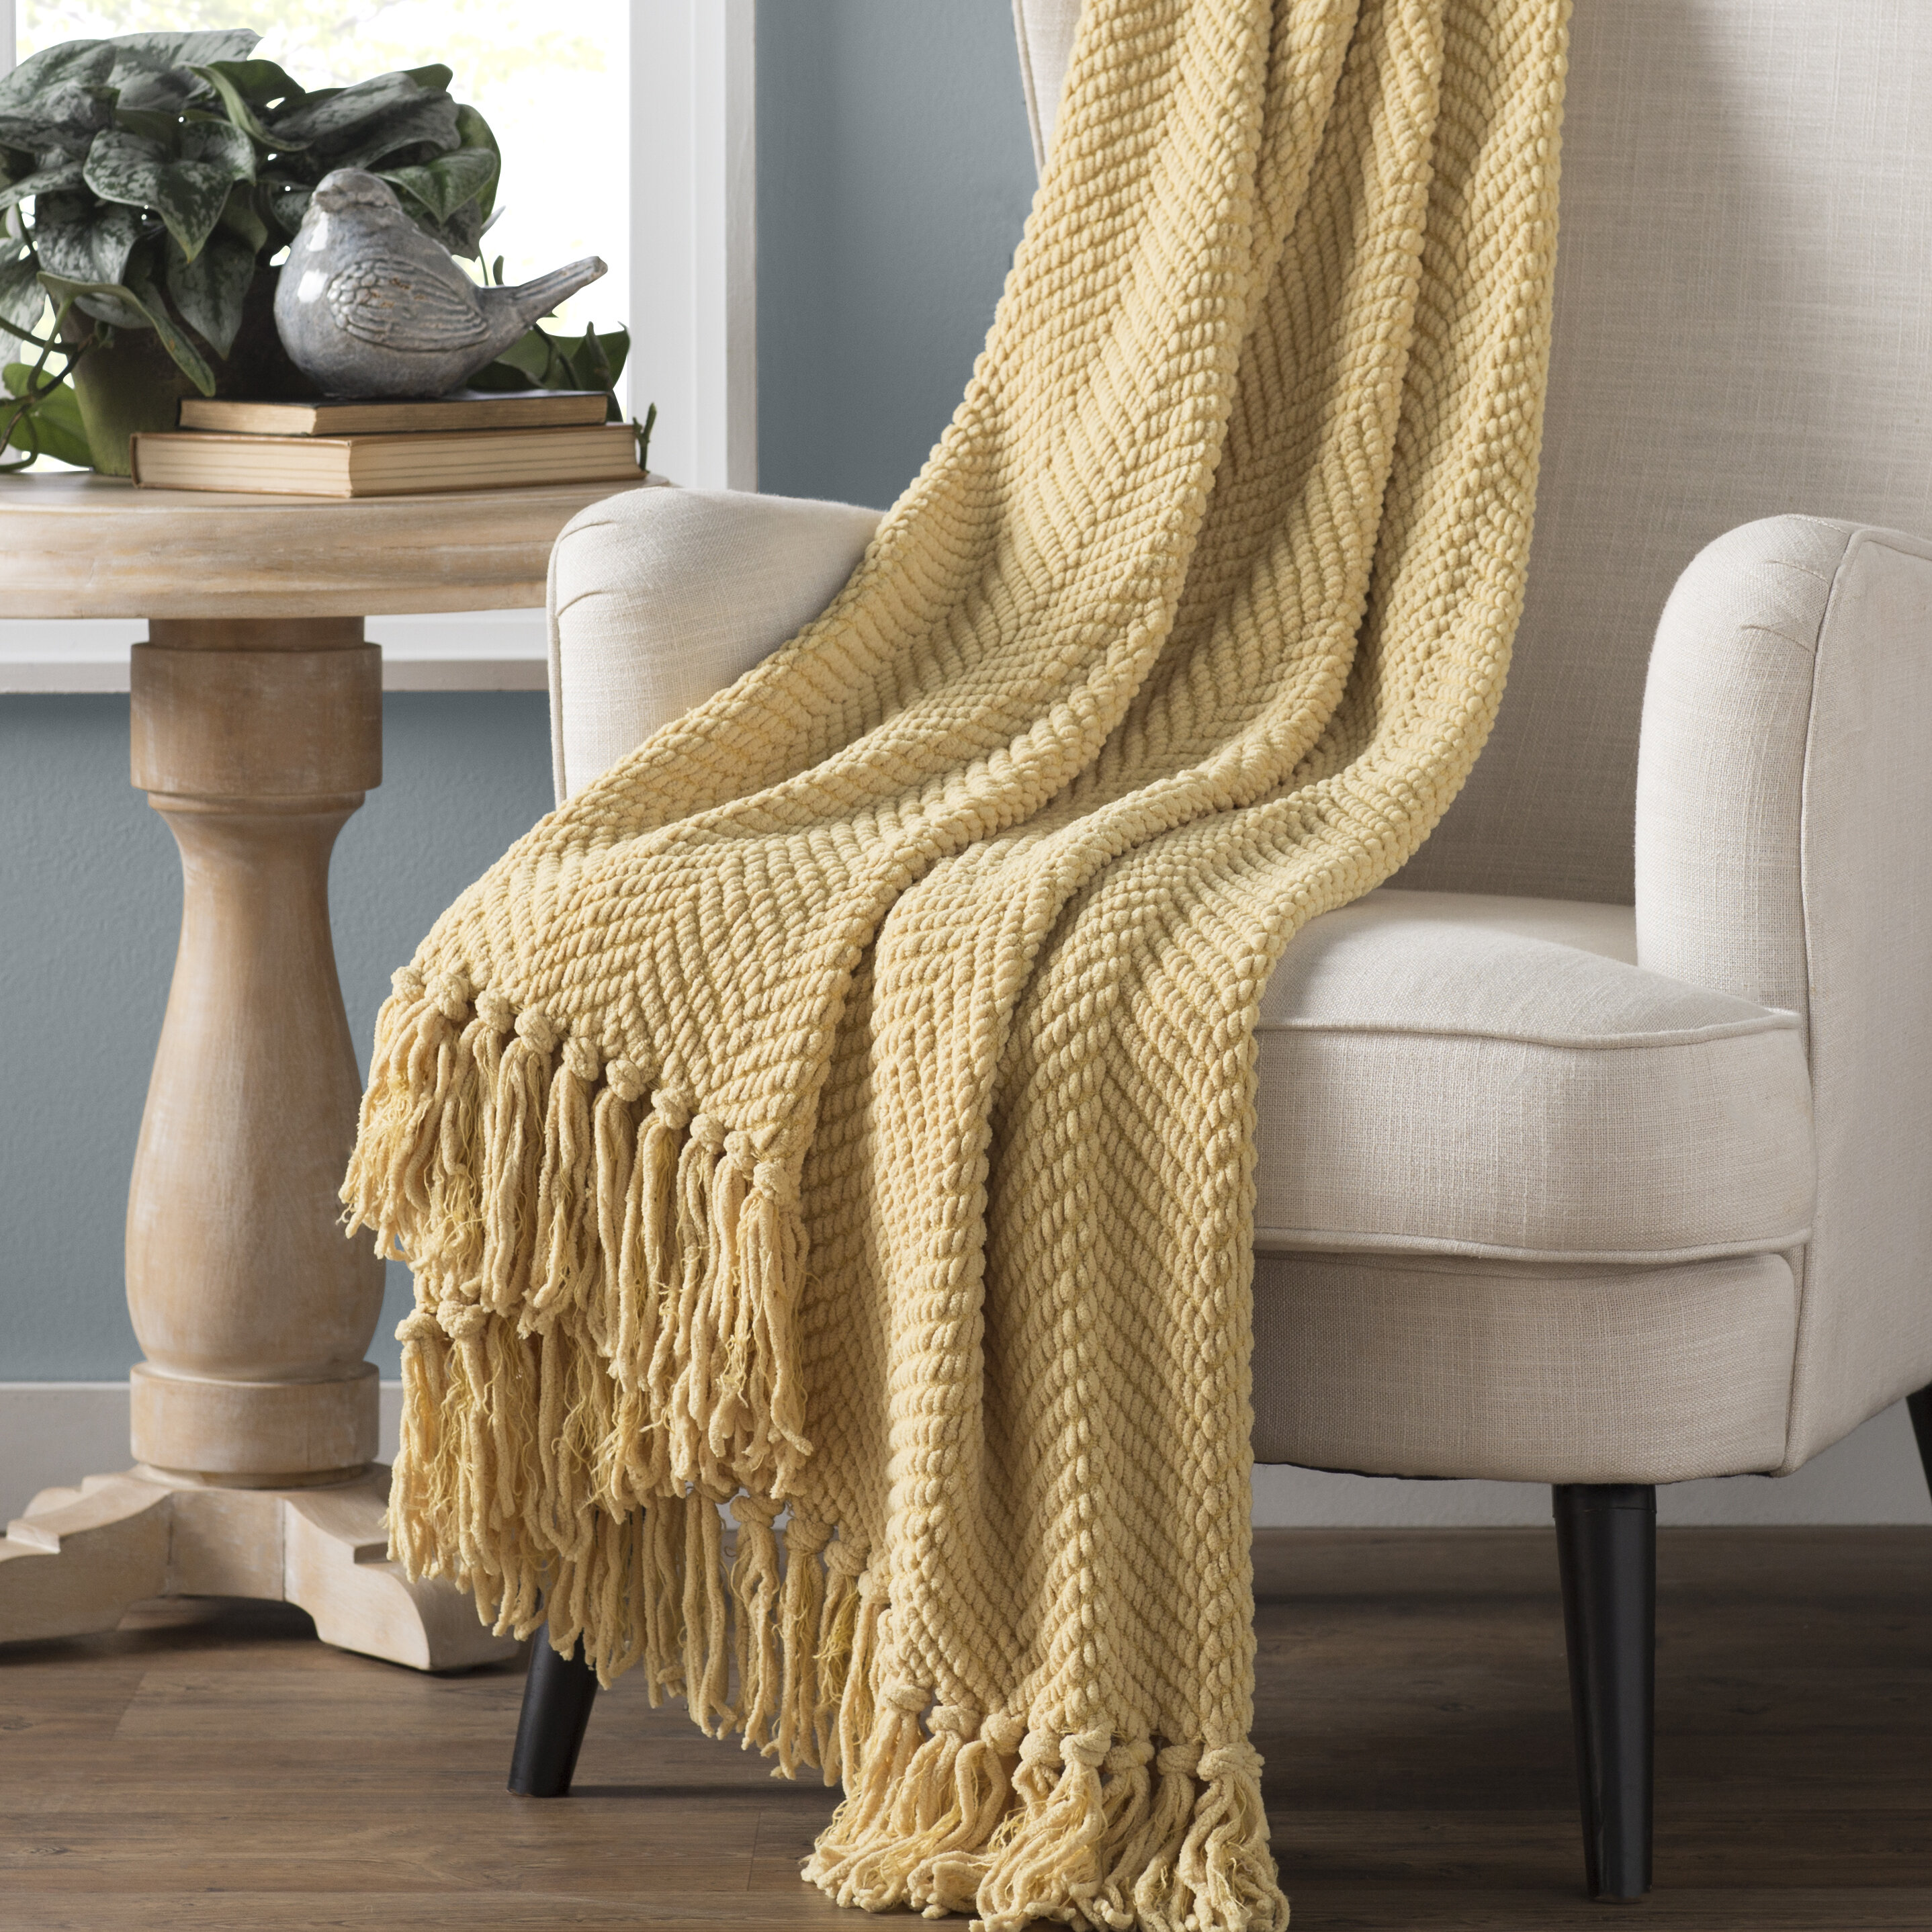 nader-tweed-knitted-design-throw.jpg